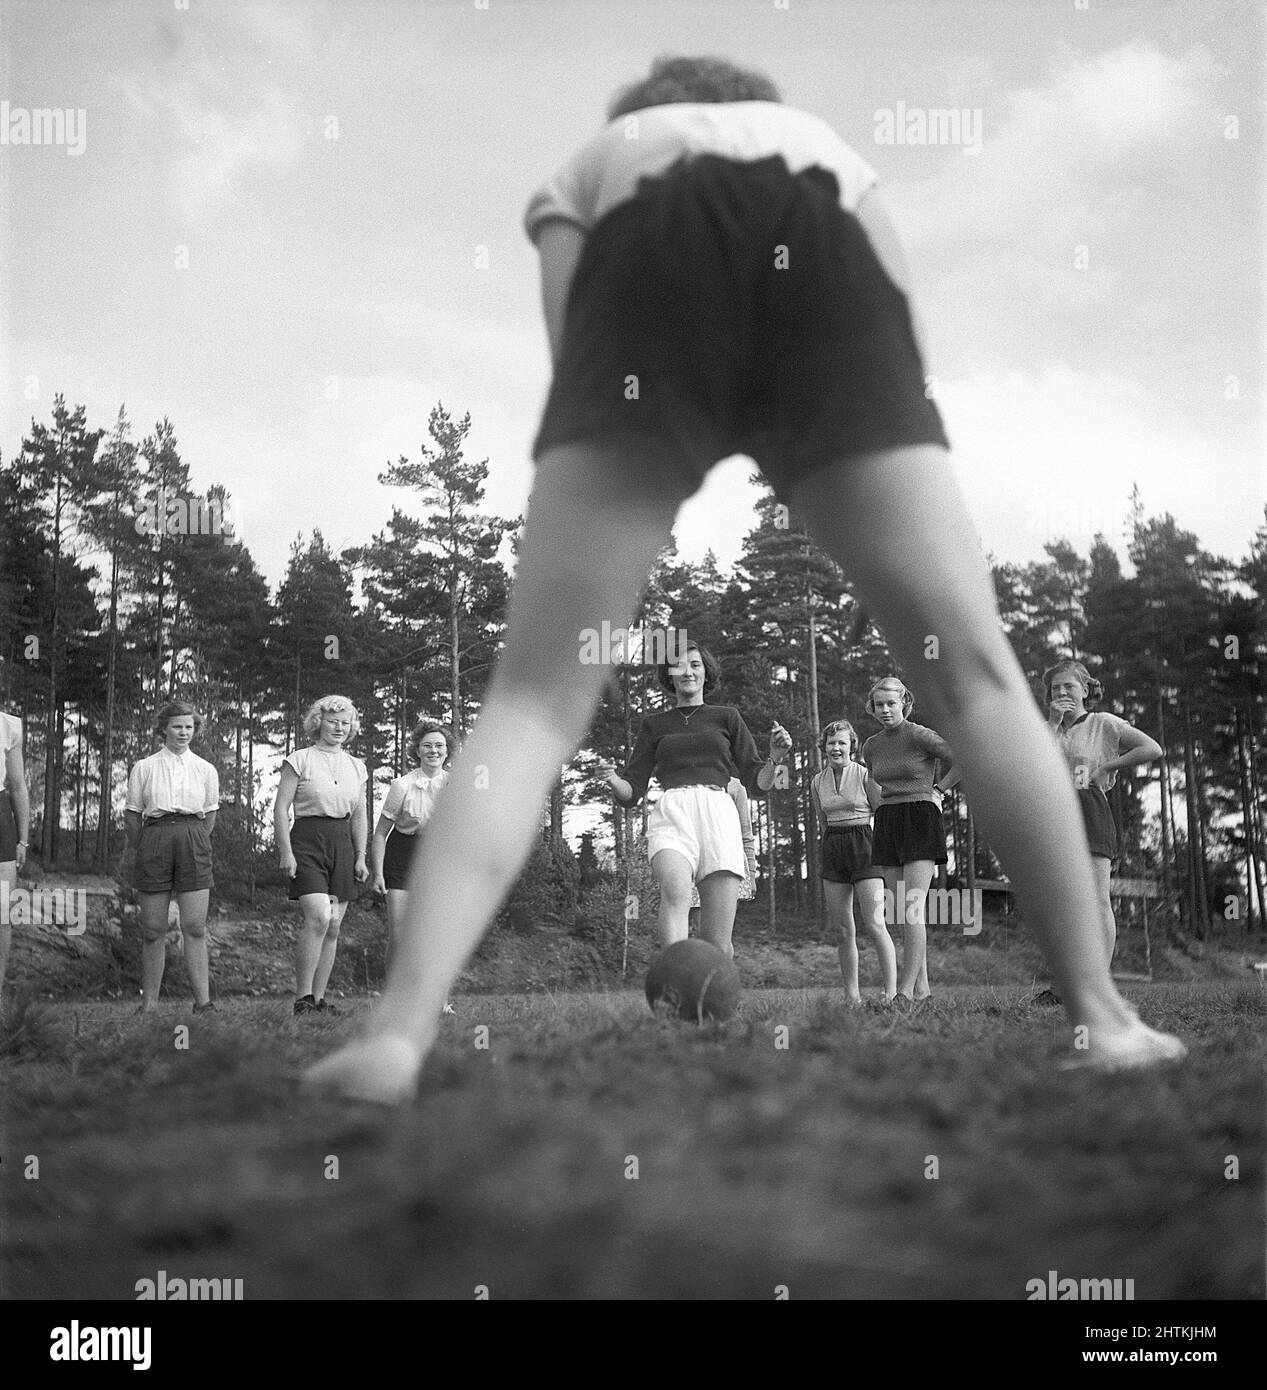 Nel 1950s. Una squadra di calcio femminile durante la pratica. Uno ad uno sparano la palla al portiere che è raffigurato da dietro. Svezia 1951 Kristoffersson BE37-12 Foto Stock